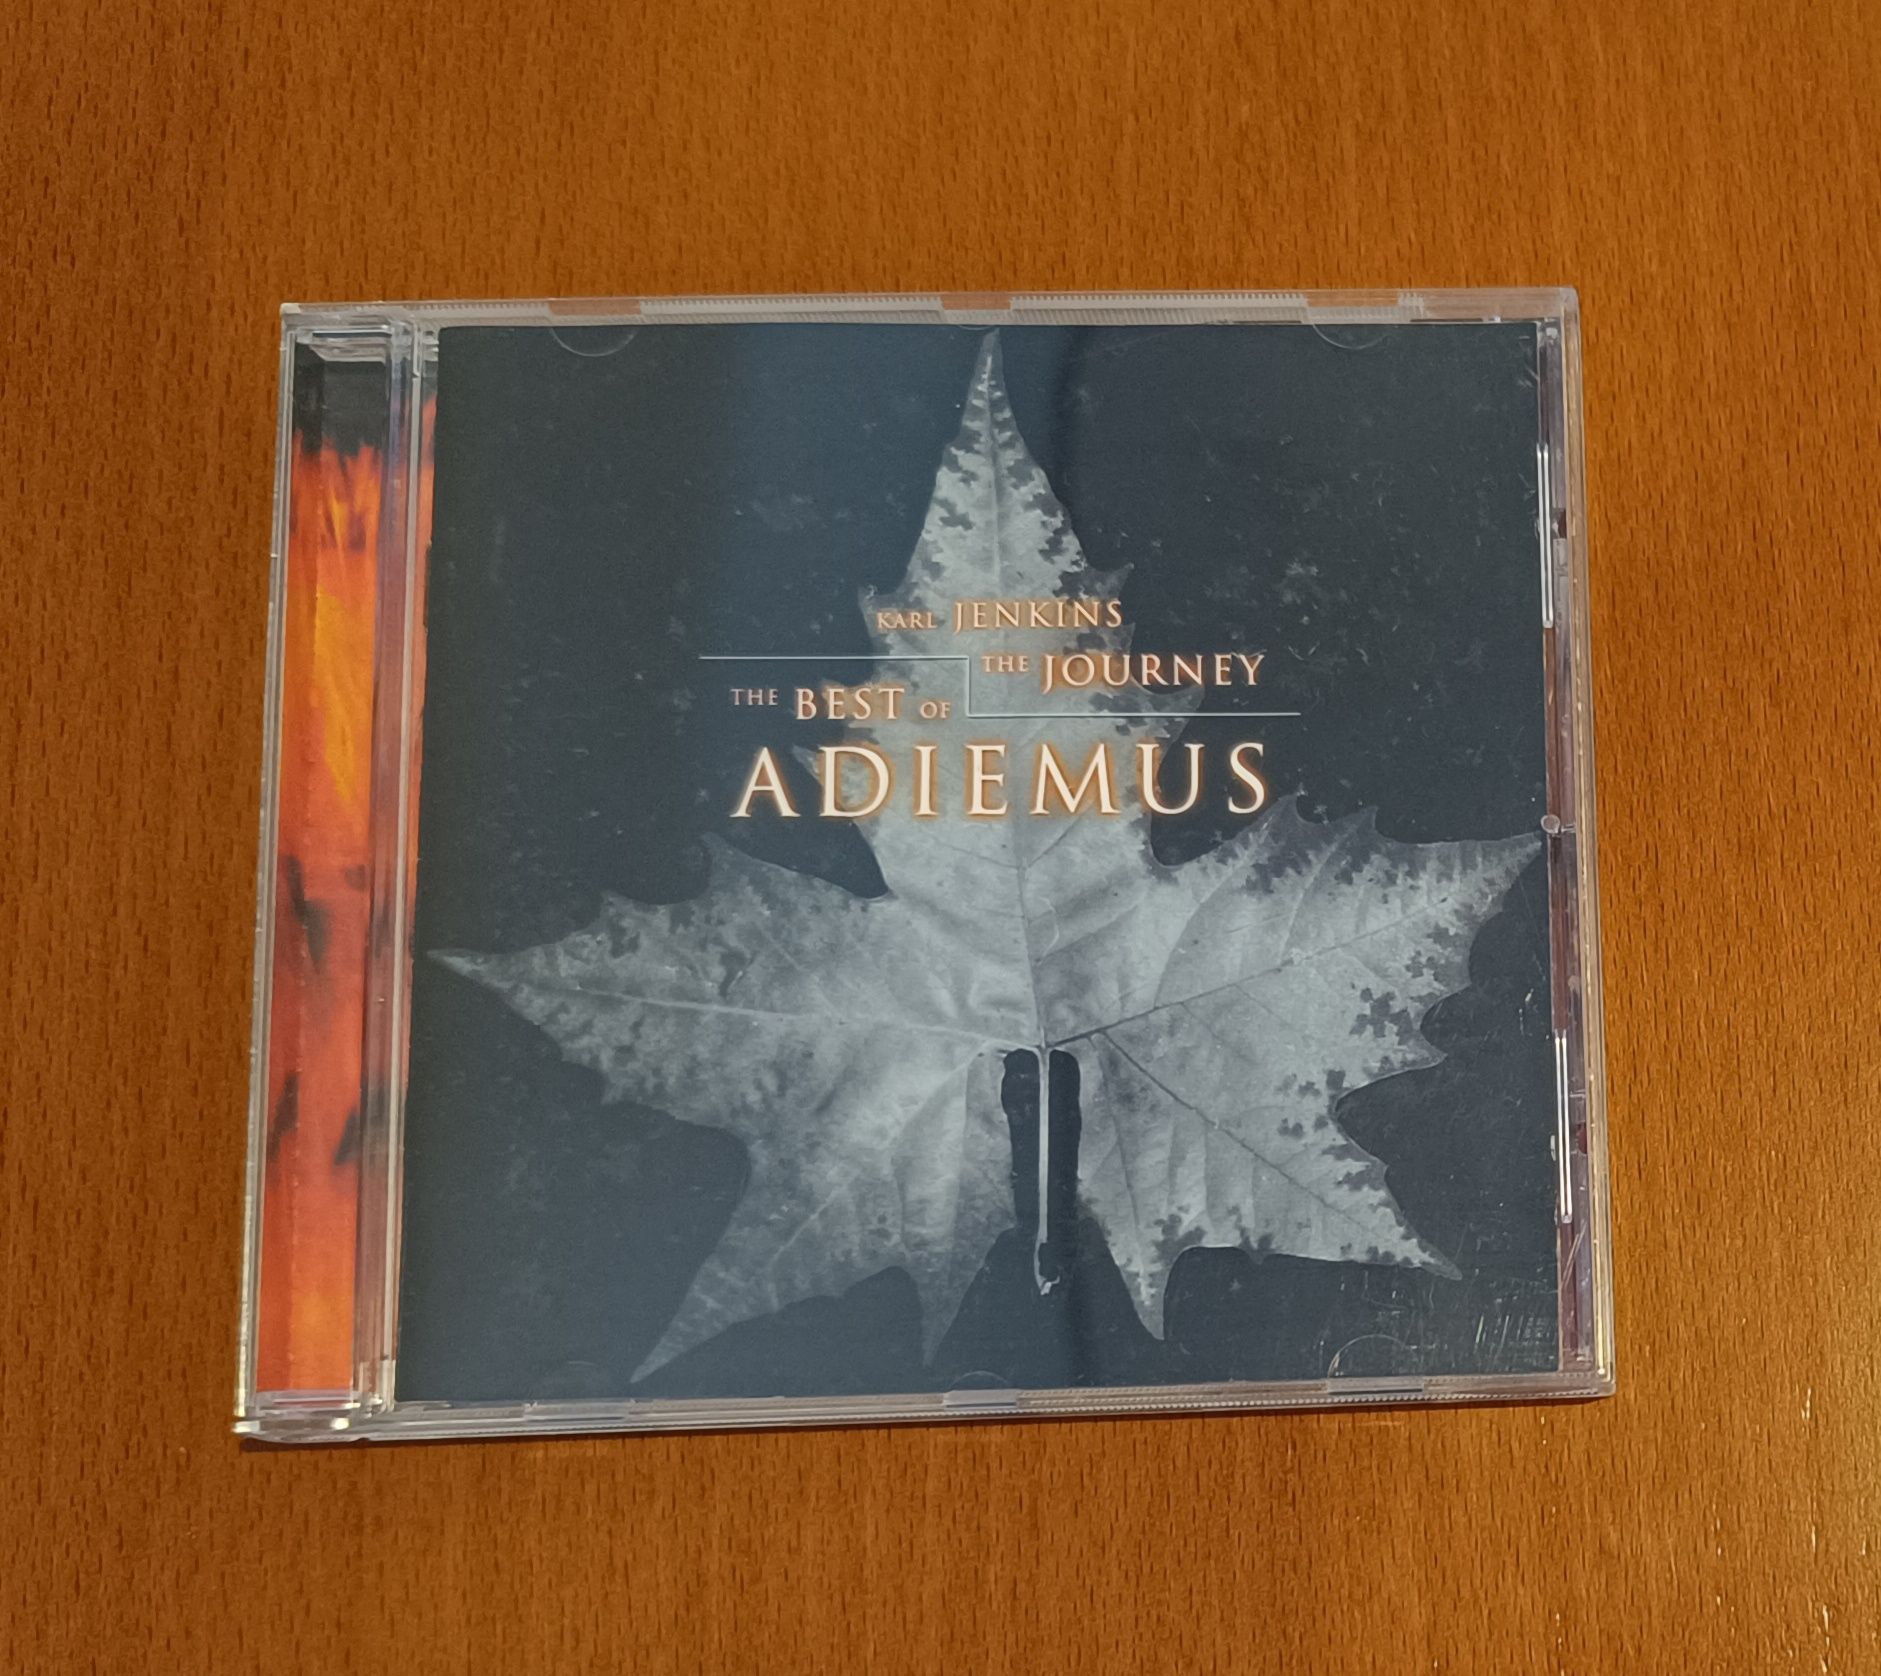 CD de Karl Jenkins – The Best Of Adiemus - The Journey como Novo.